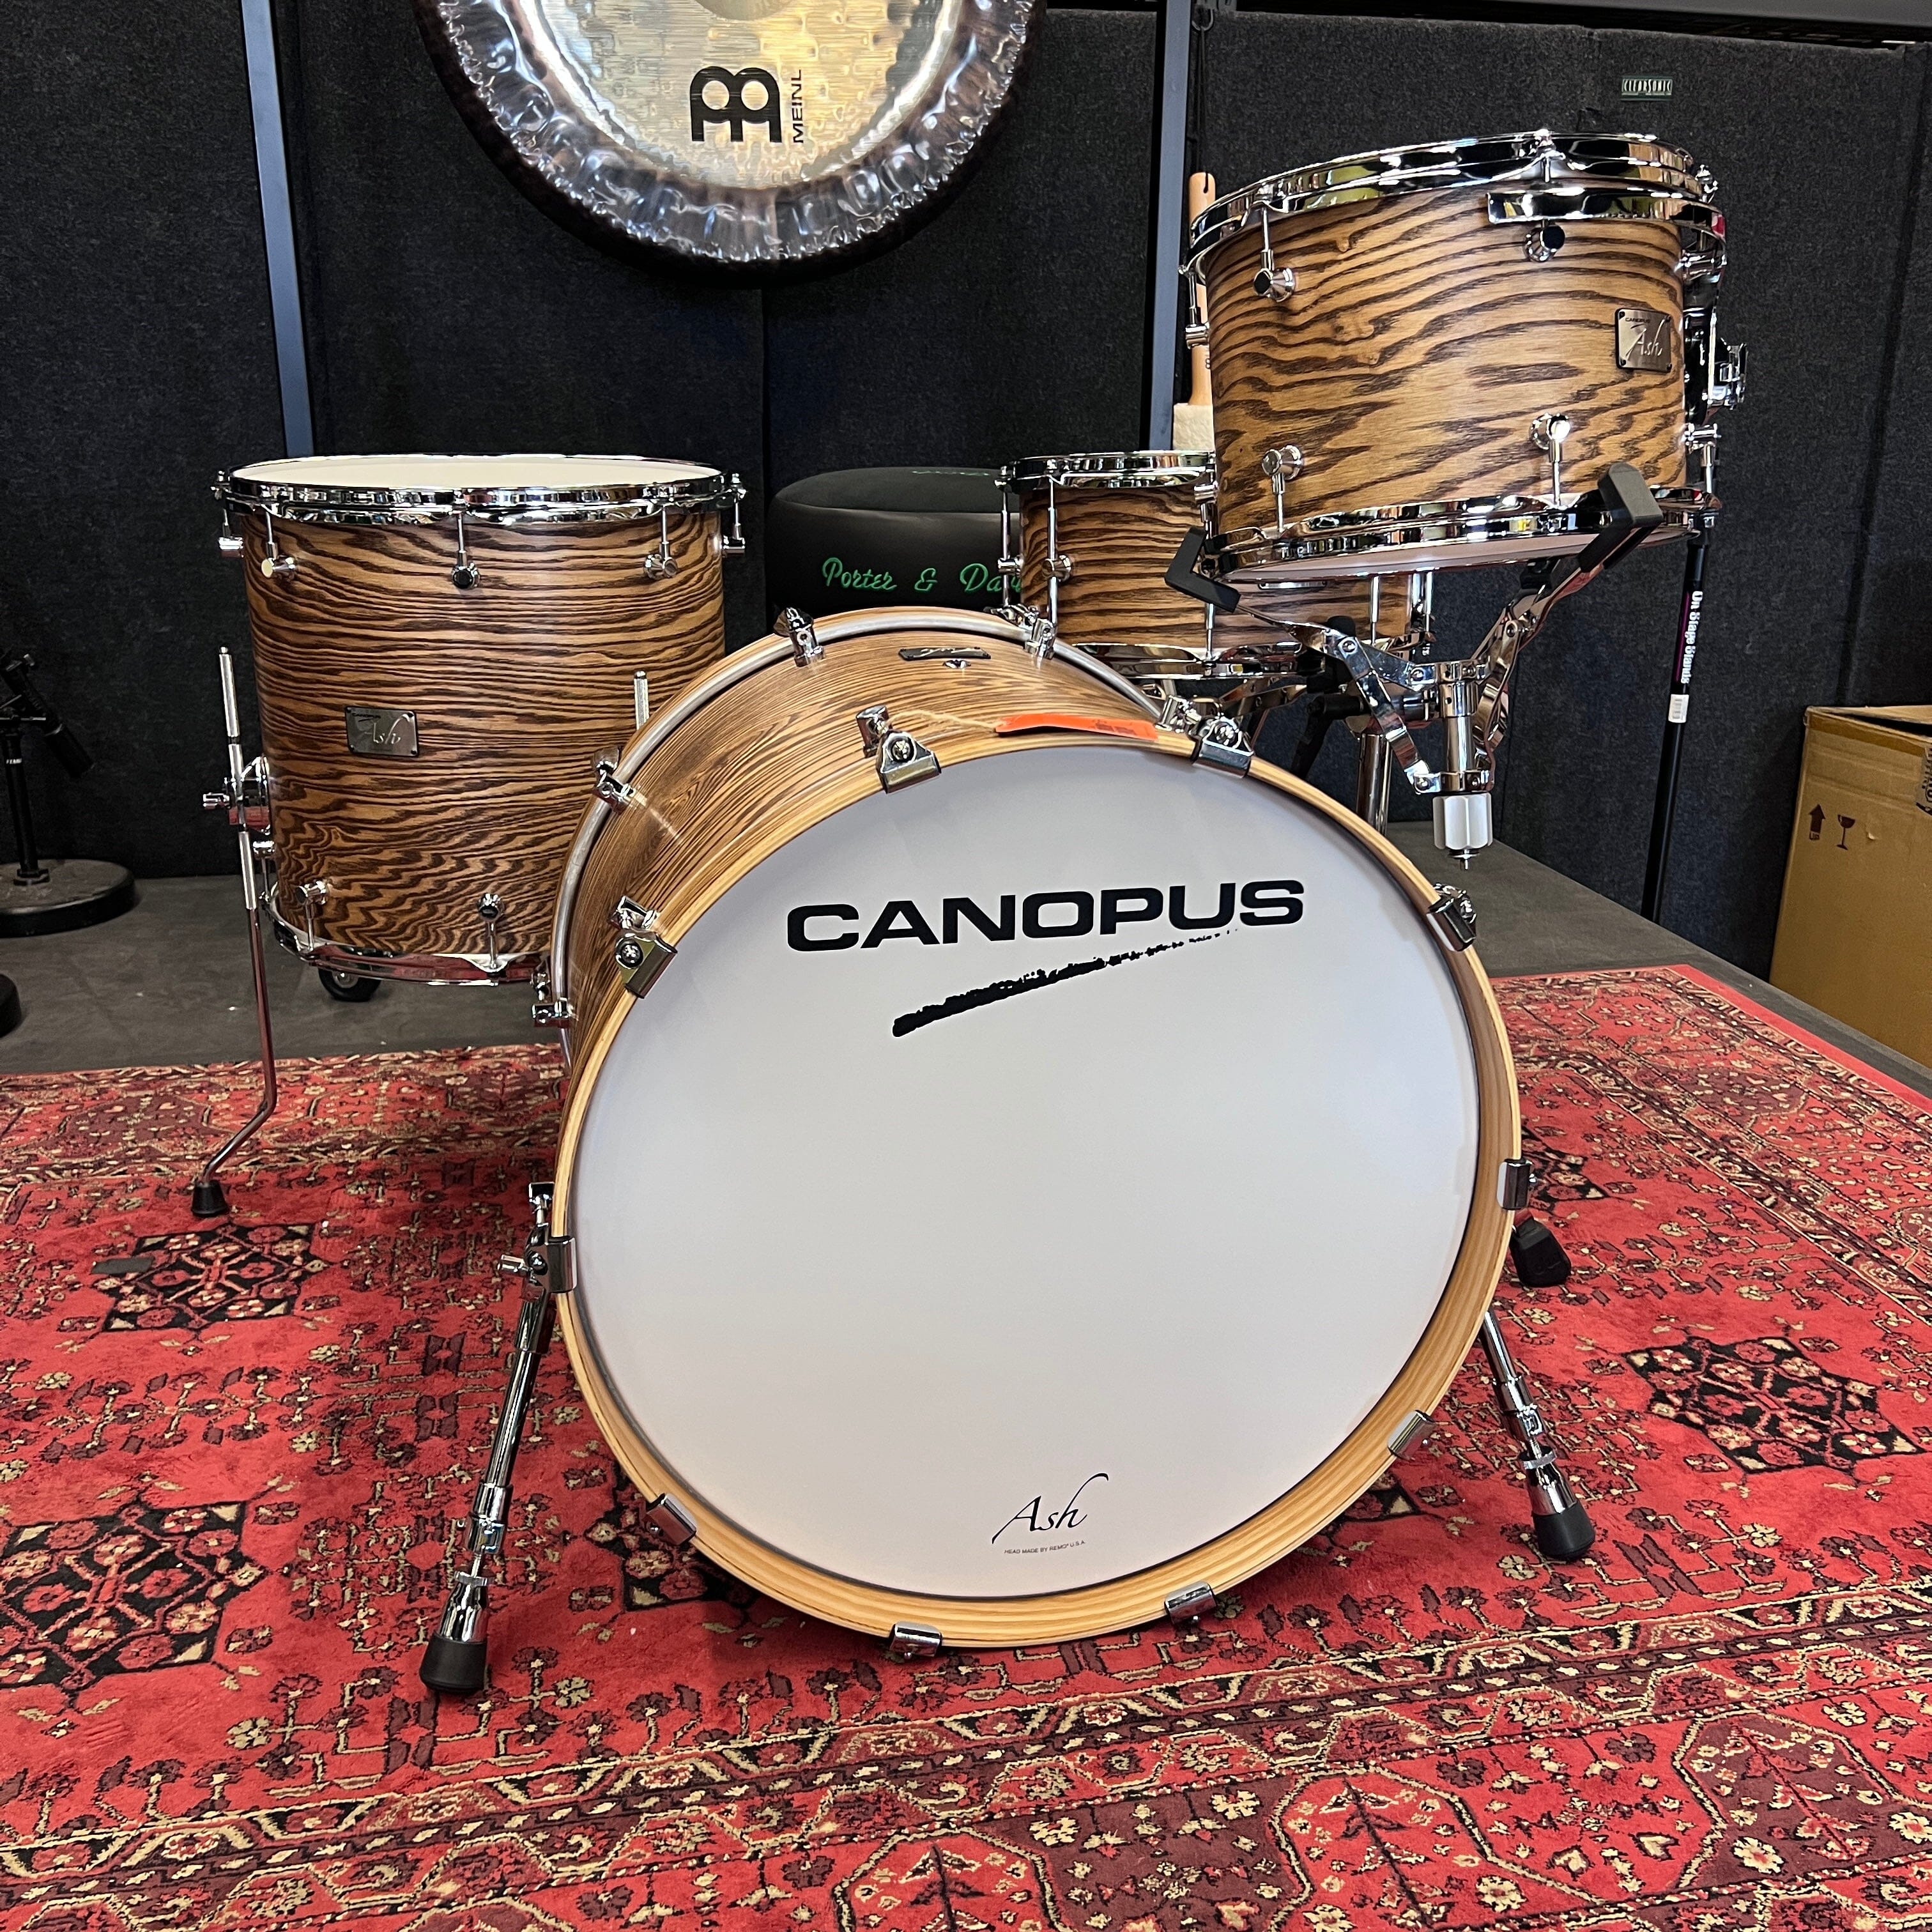 Canopus Ash Drum Kit 13/16/22/snare drum kit Canopus 